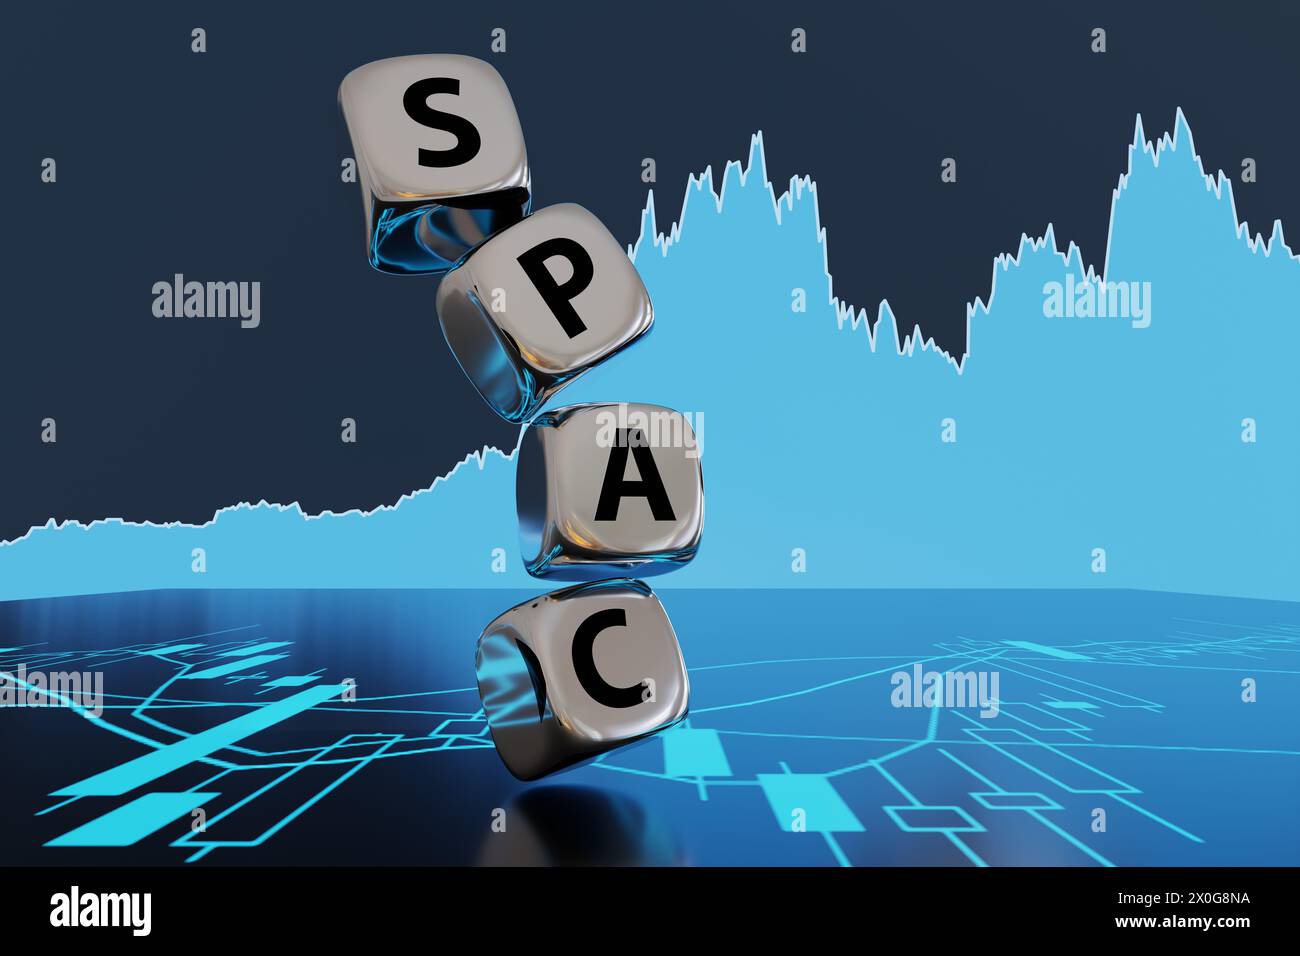 Pila de dados metálicos de plata que forman la palabra SPAC en el fondo de la gráfica de stock azul y la carta de palo de vela. Empresa de adquisición de propósito especial Foto de stock